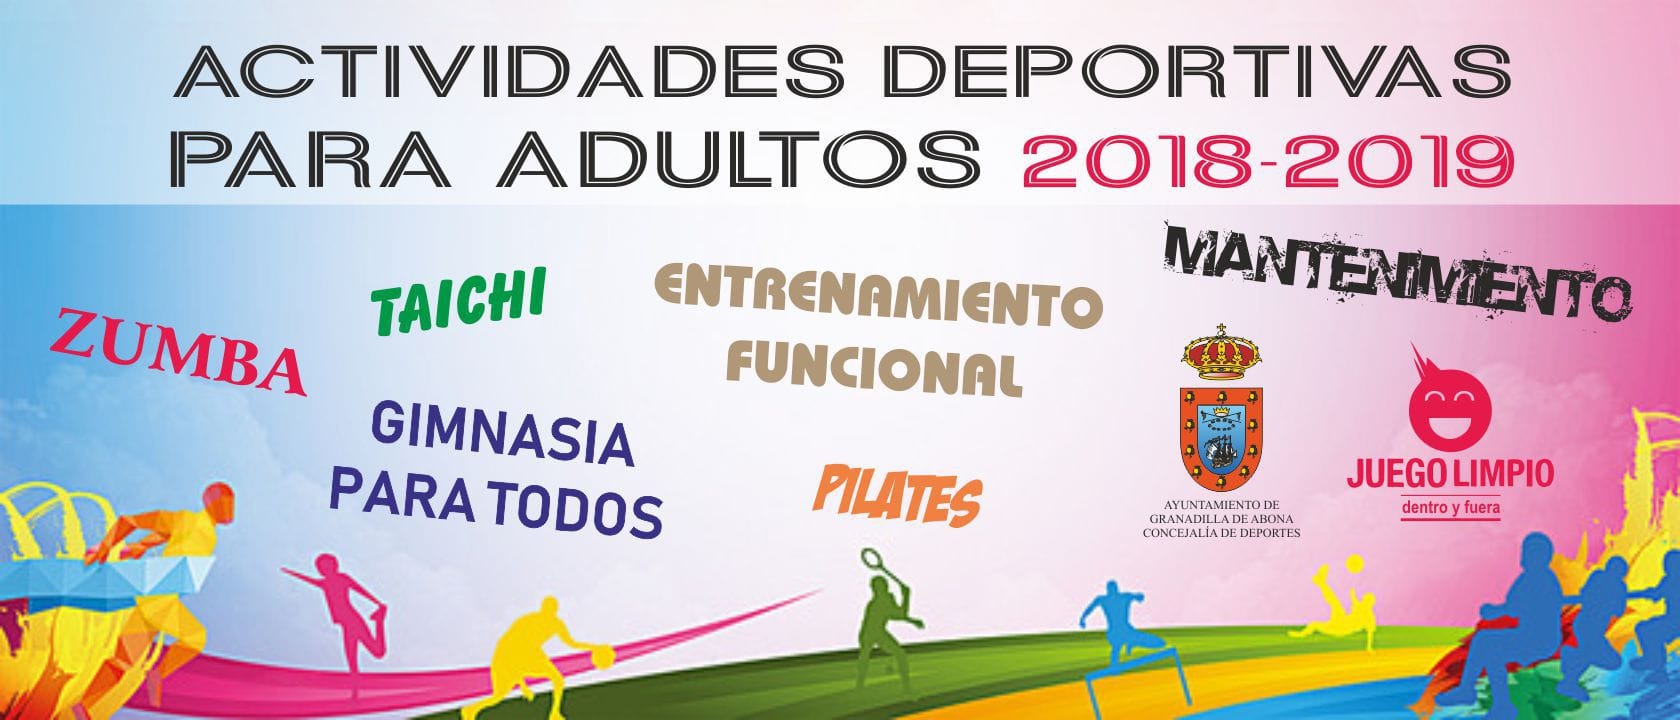 La inscripción a las ‘Actividades Deportivas para Adultos 2018-2019’ sigue abierta